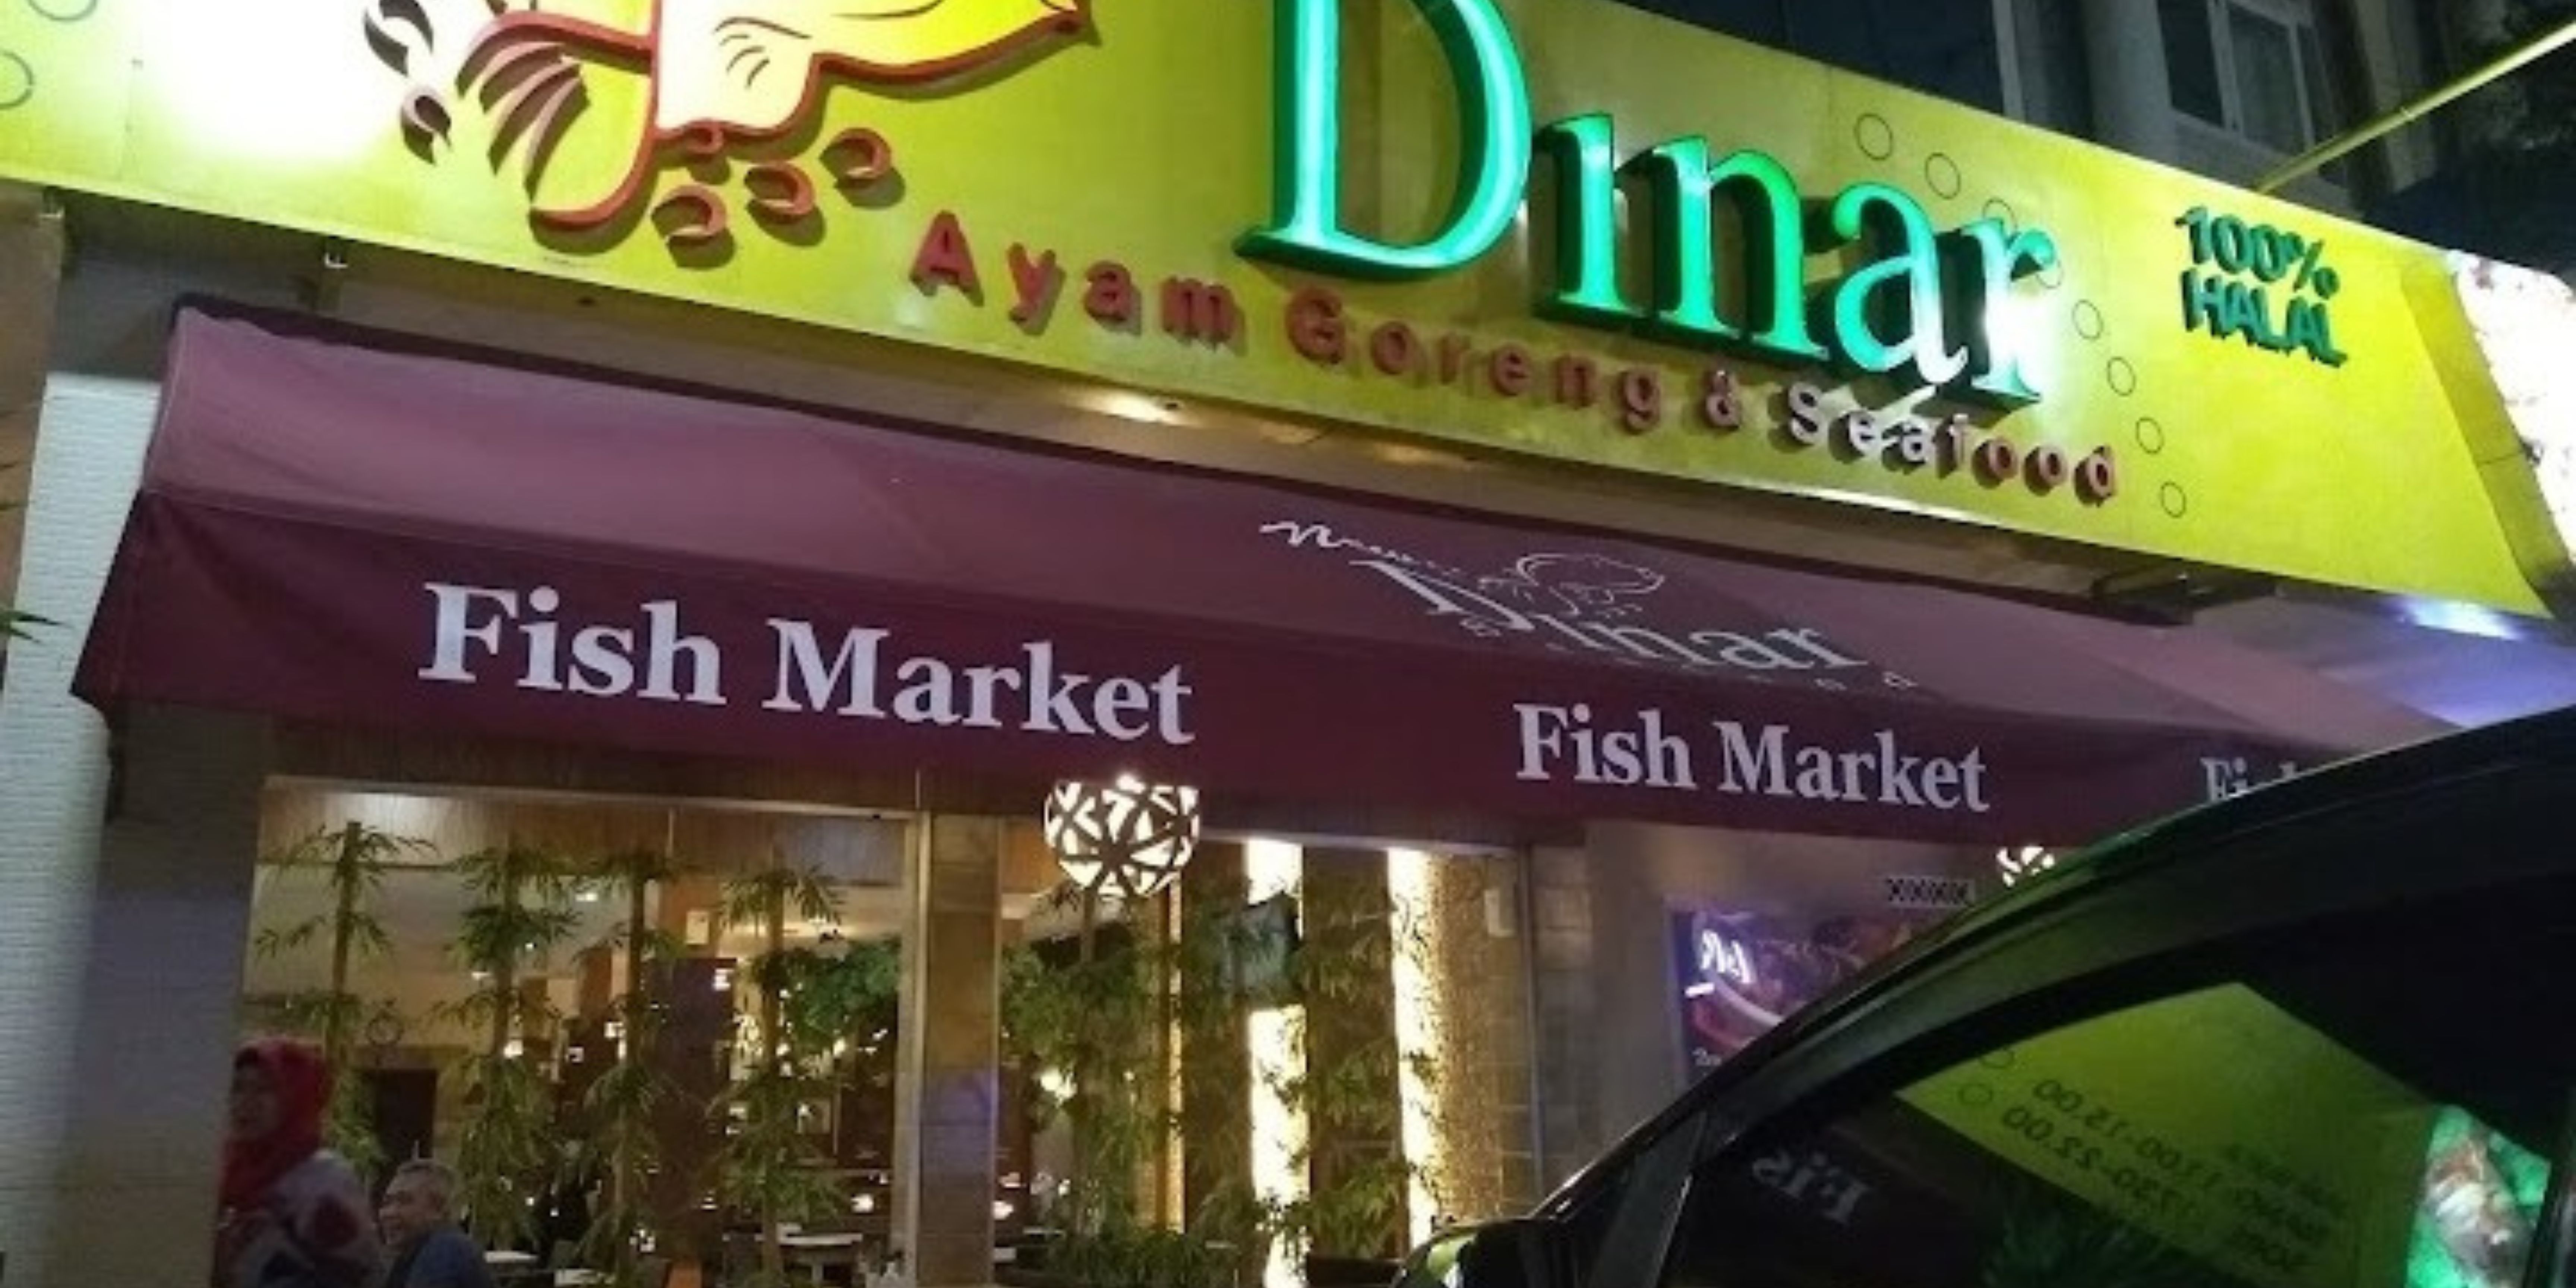 Rumah Makan Dinar Fresh Market 